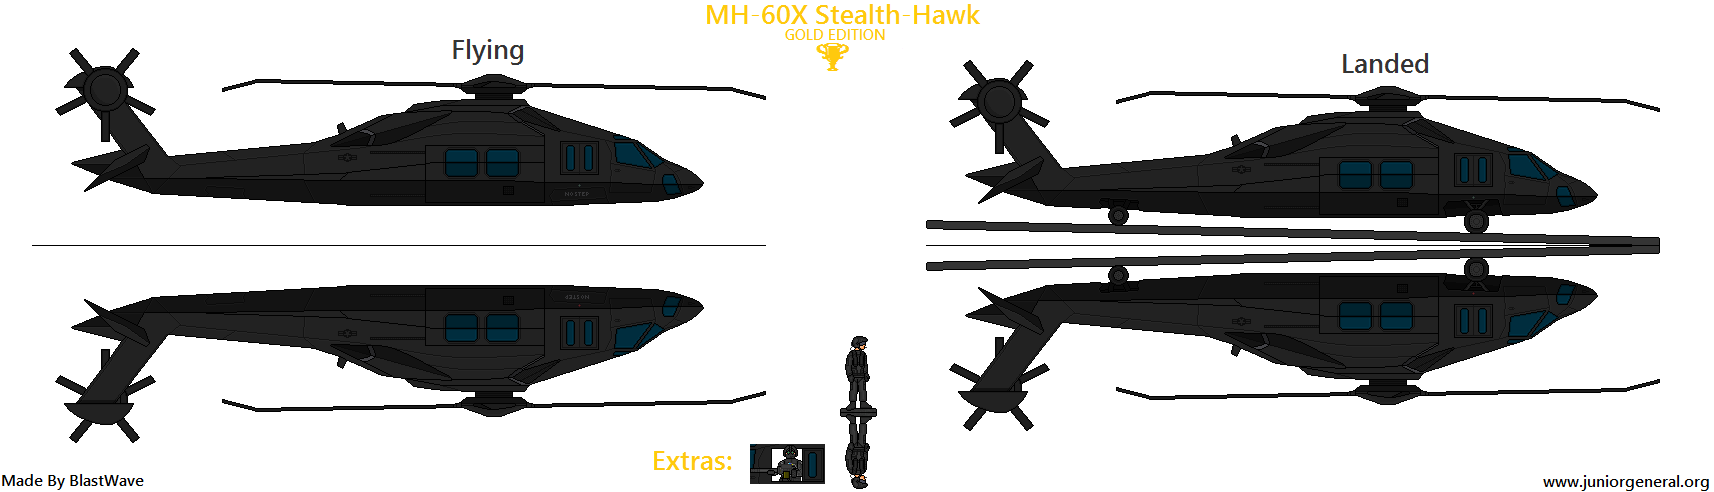 MH-60X Stealth Hawk